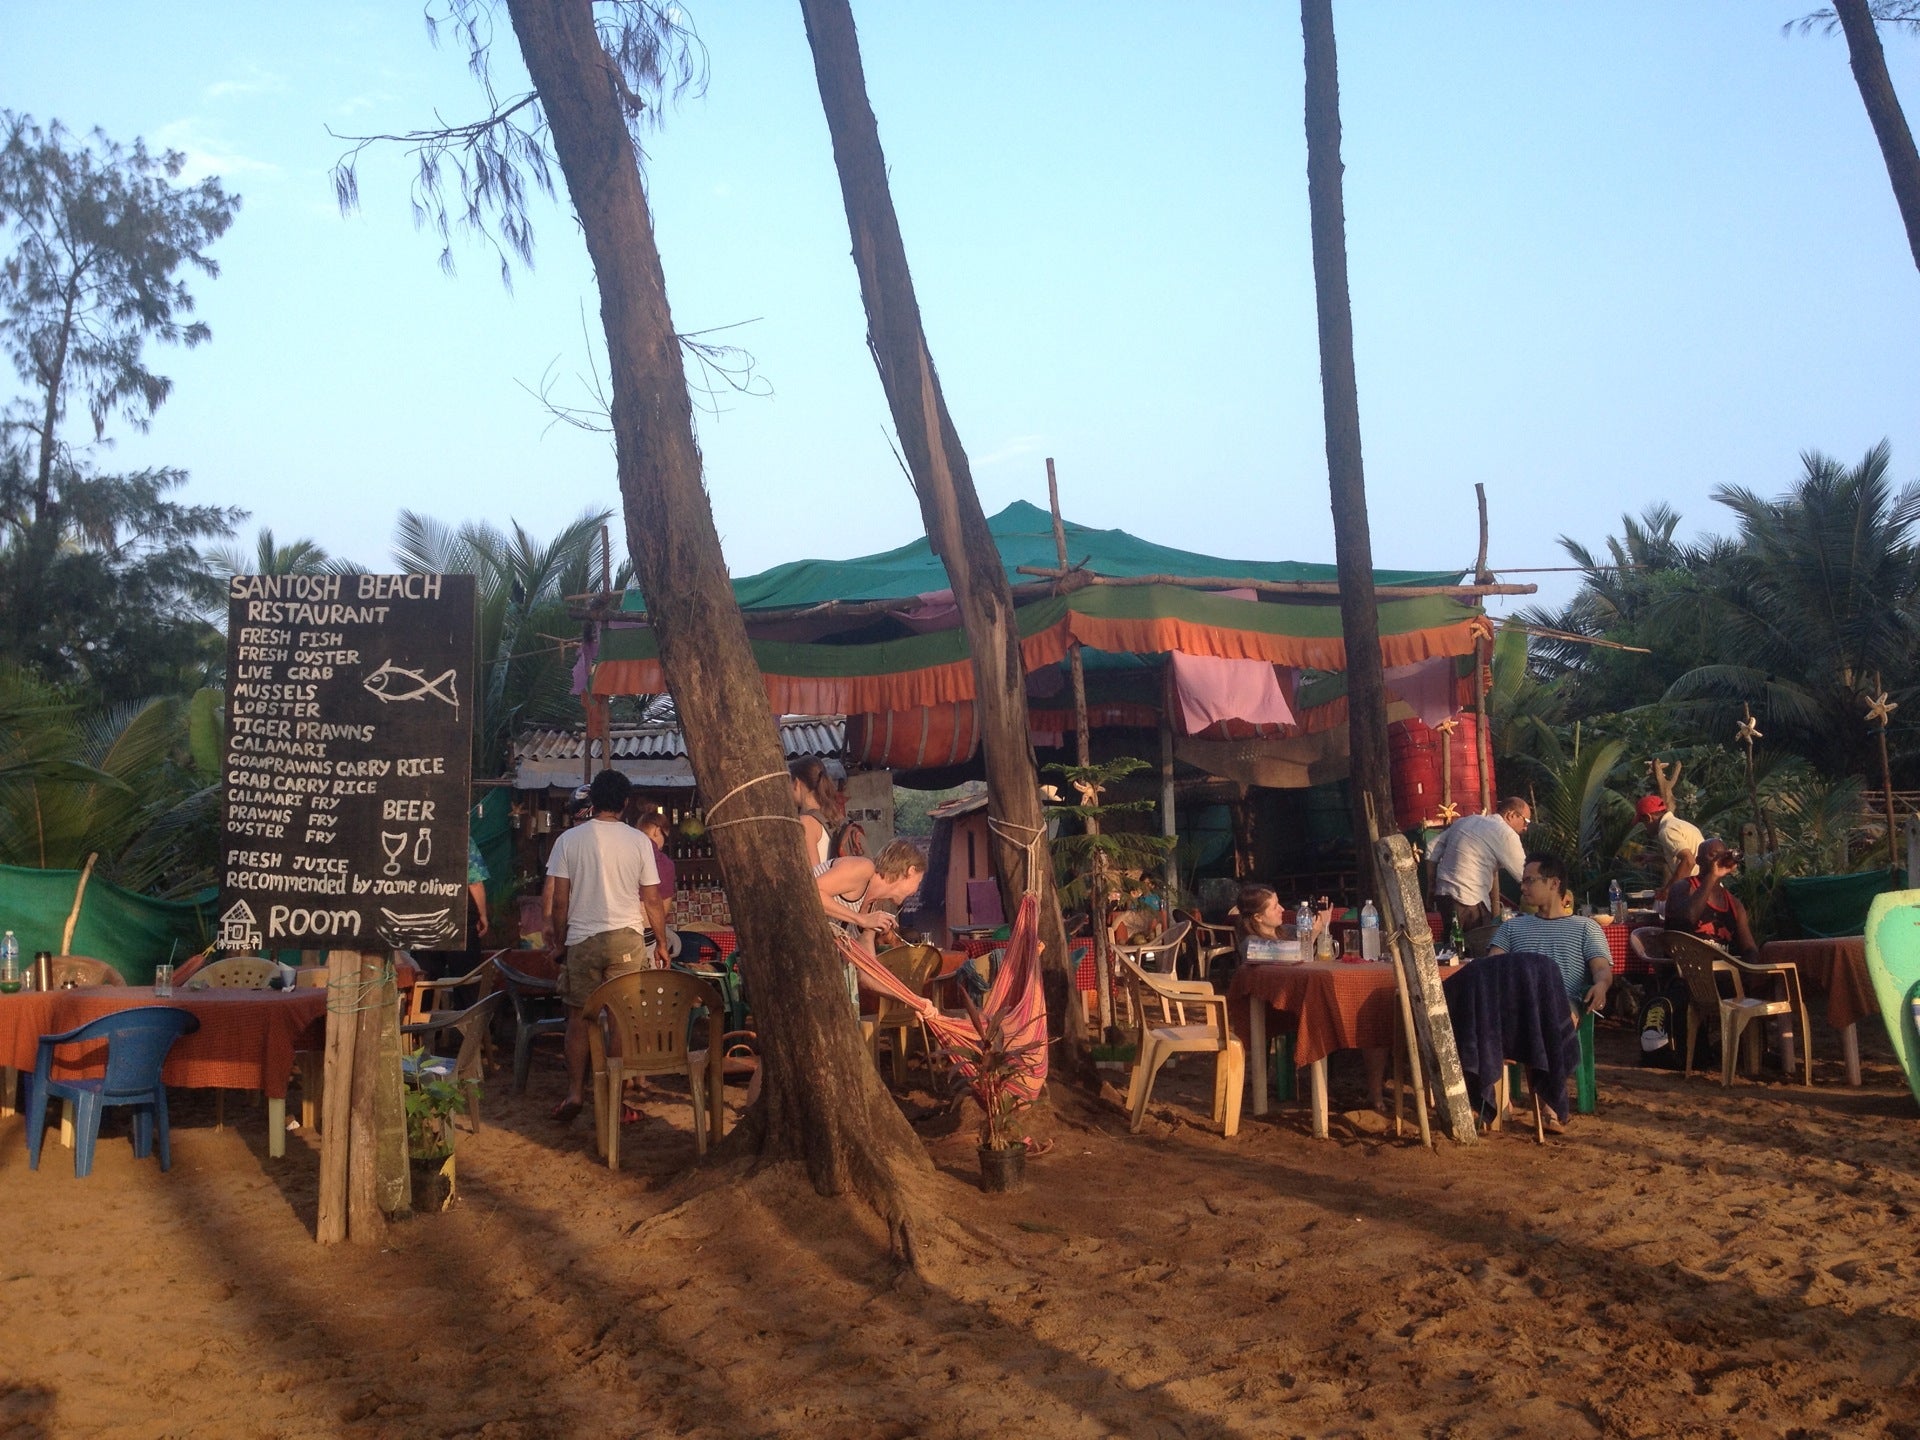 Santosh's Beach Restaurant